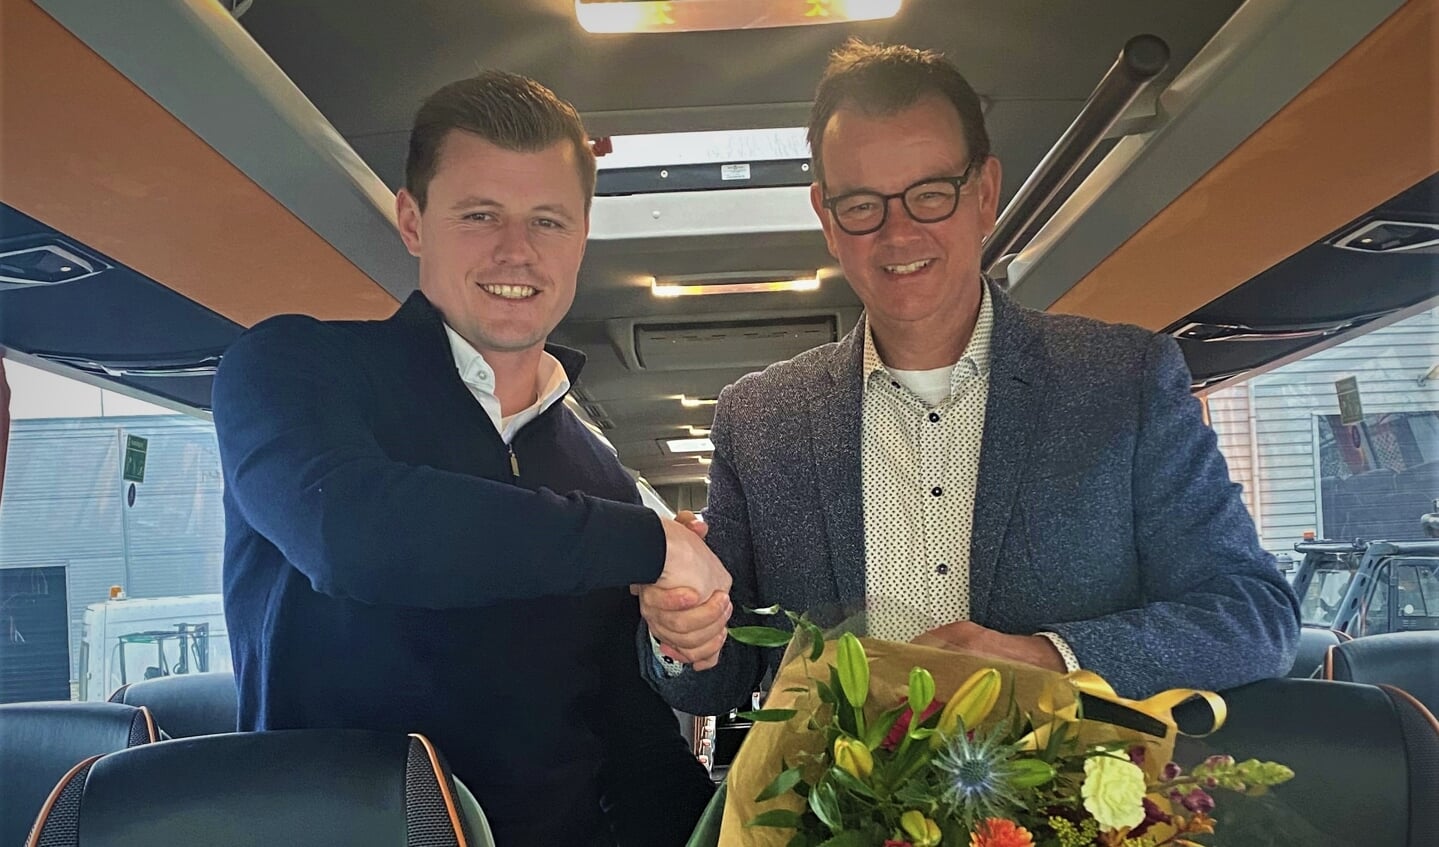 v.l.n.r. Chris Verschoor - Verschoor Reizen en Sven Dijksma - Daimler Buses | EvoBus Nederland